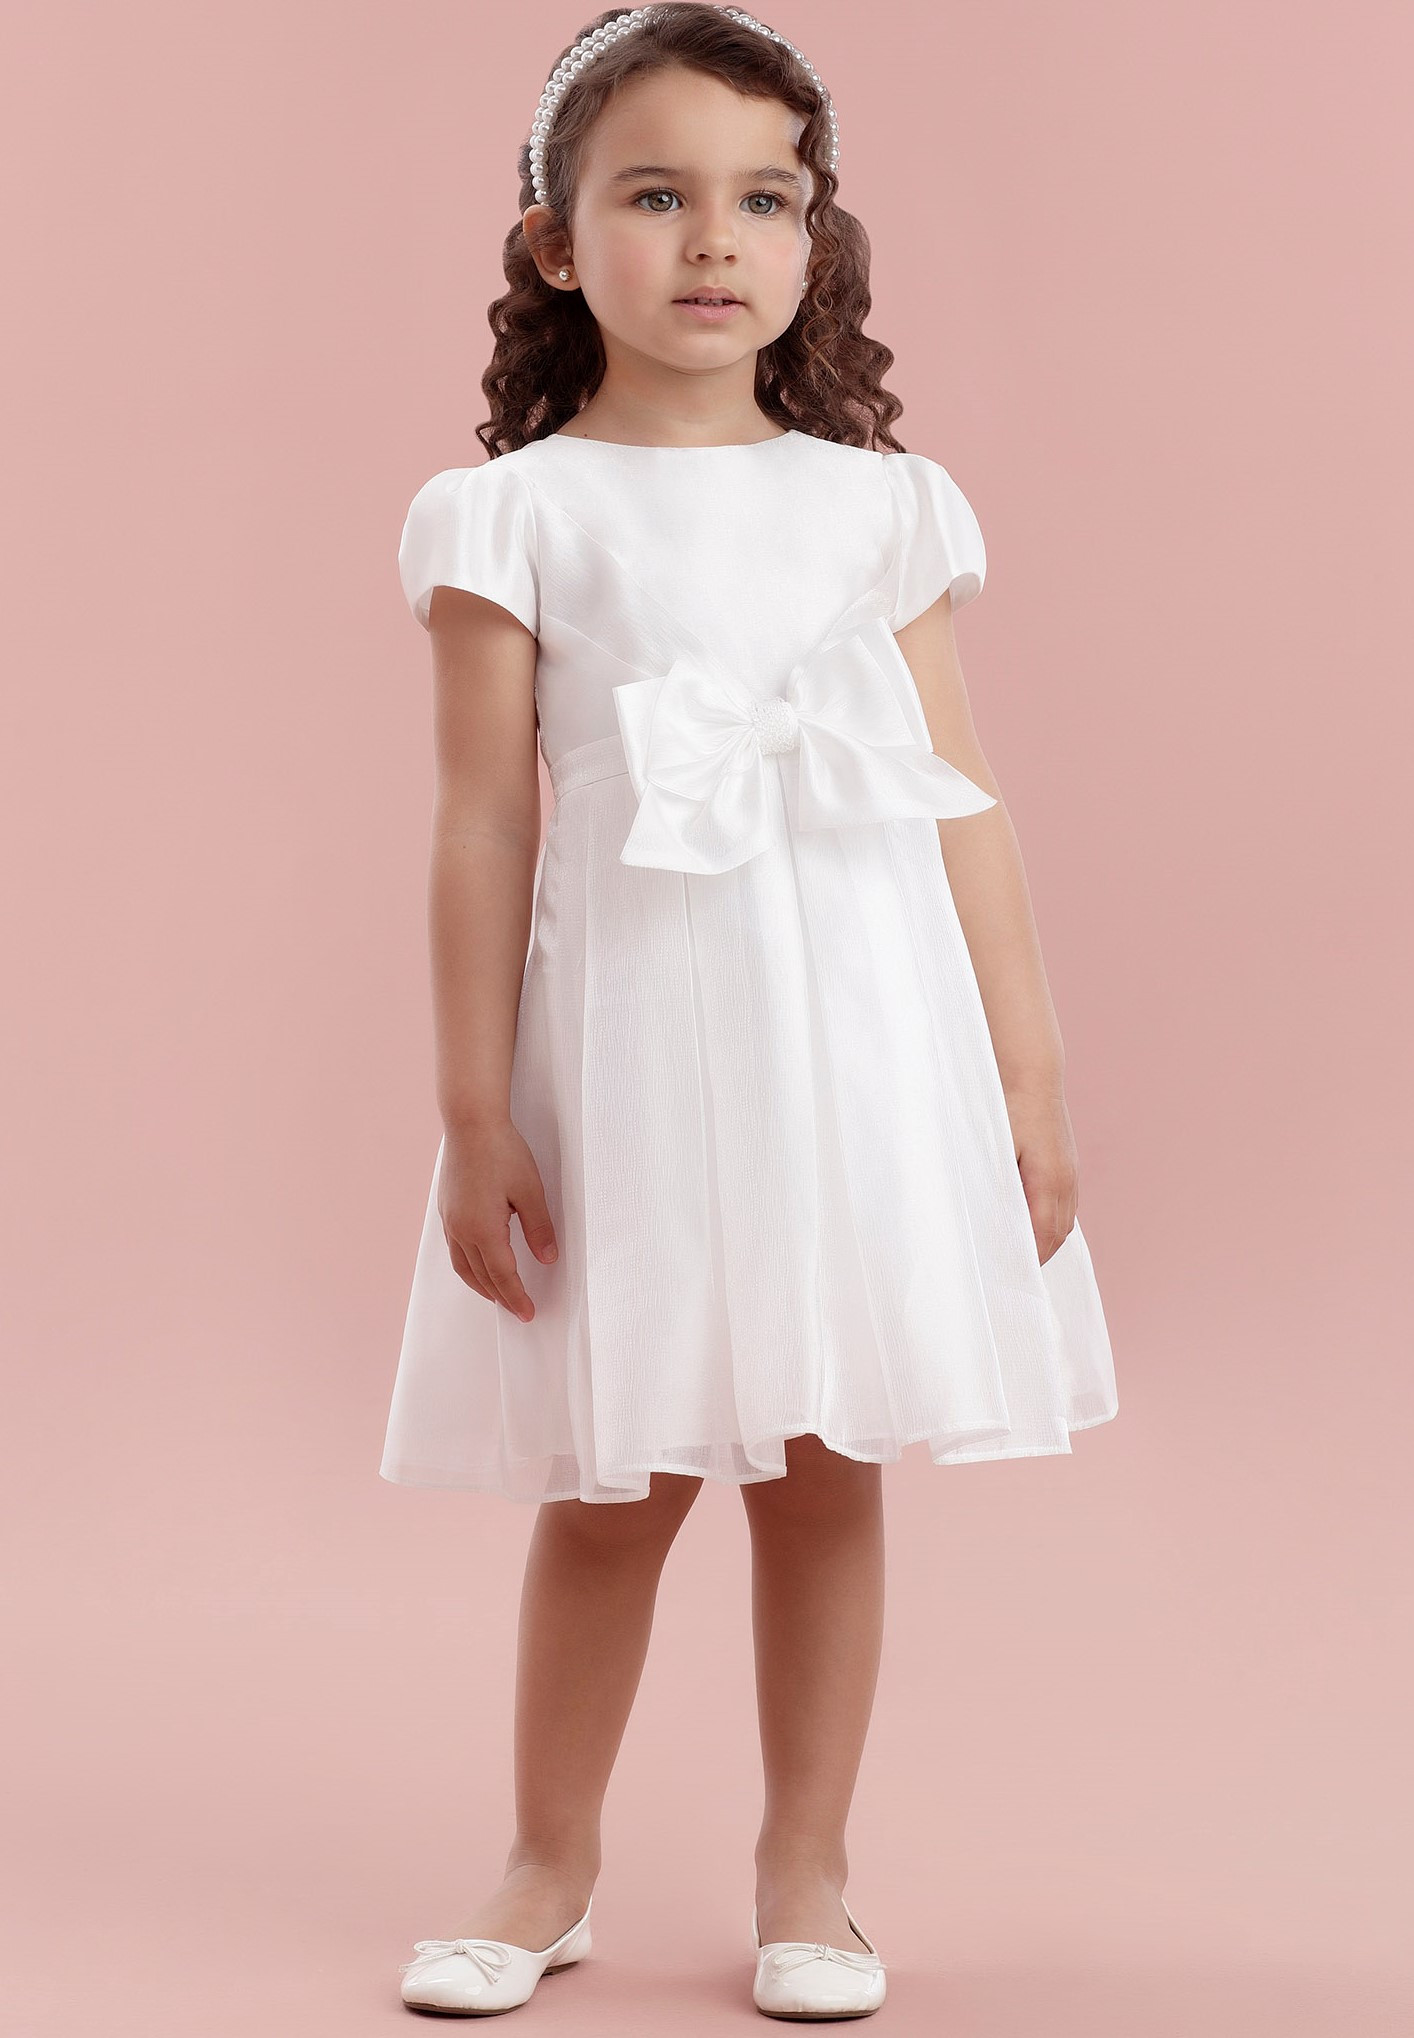 Vestido Festa Infantil Branco 11.20.31242 - Petit Cherie